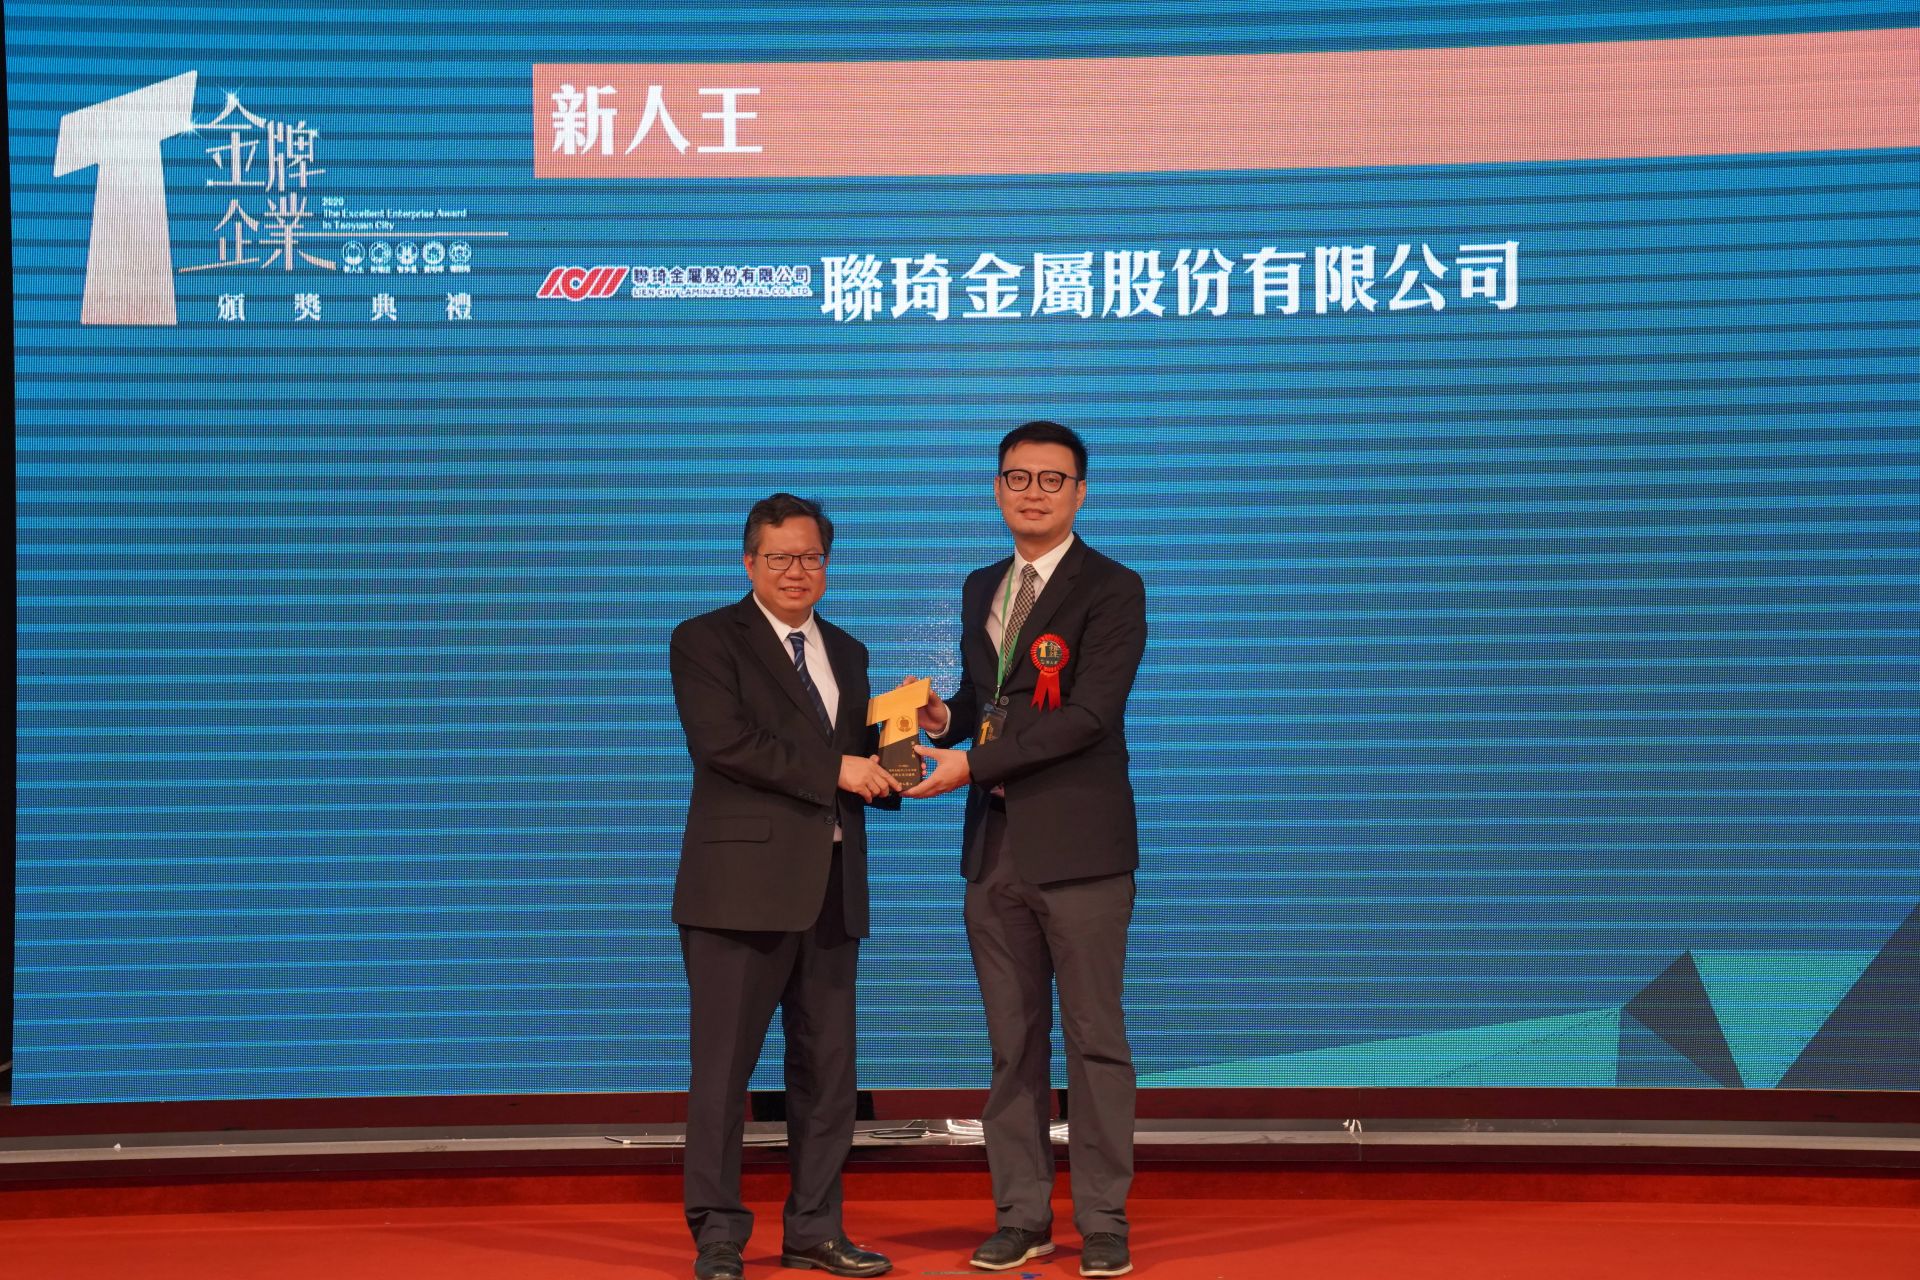 ראש עיר טאויואן ומנכ"ל ליאן צ'י ד"ר צ'ואנג בטקס הענקת הפרסים